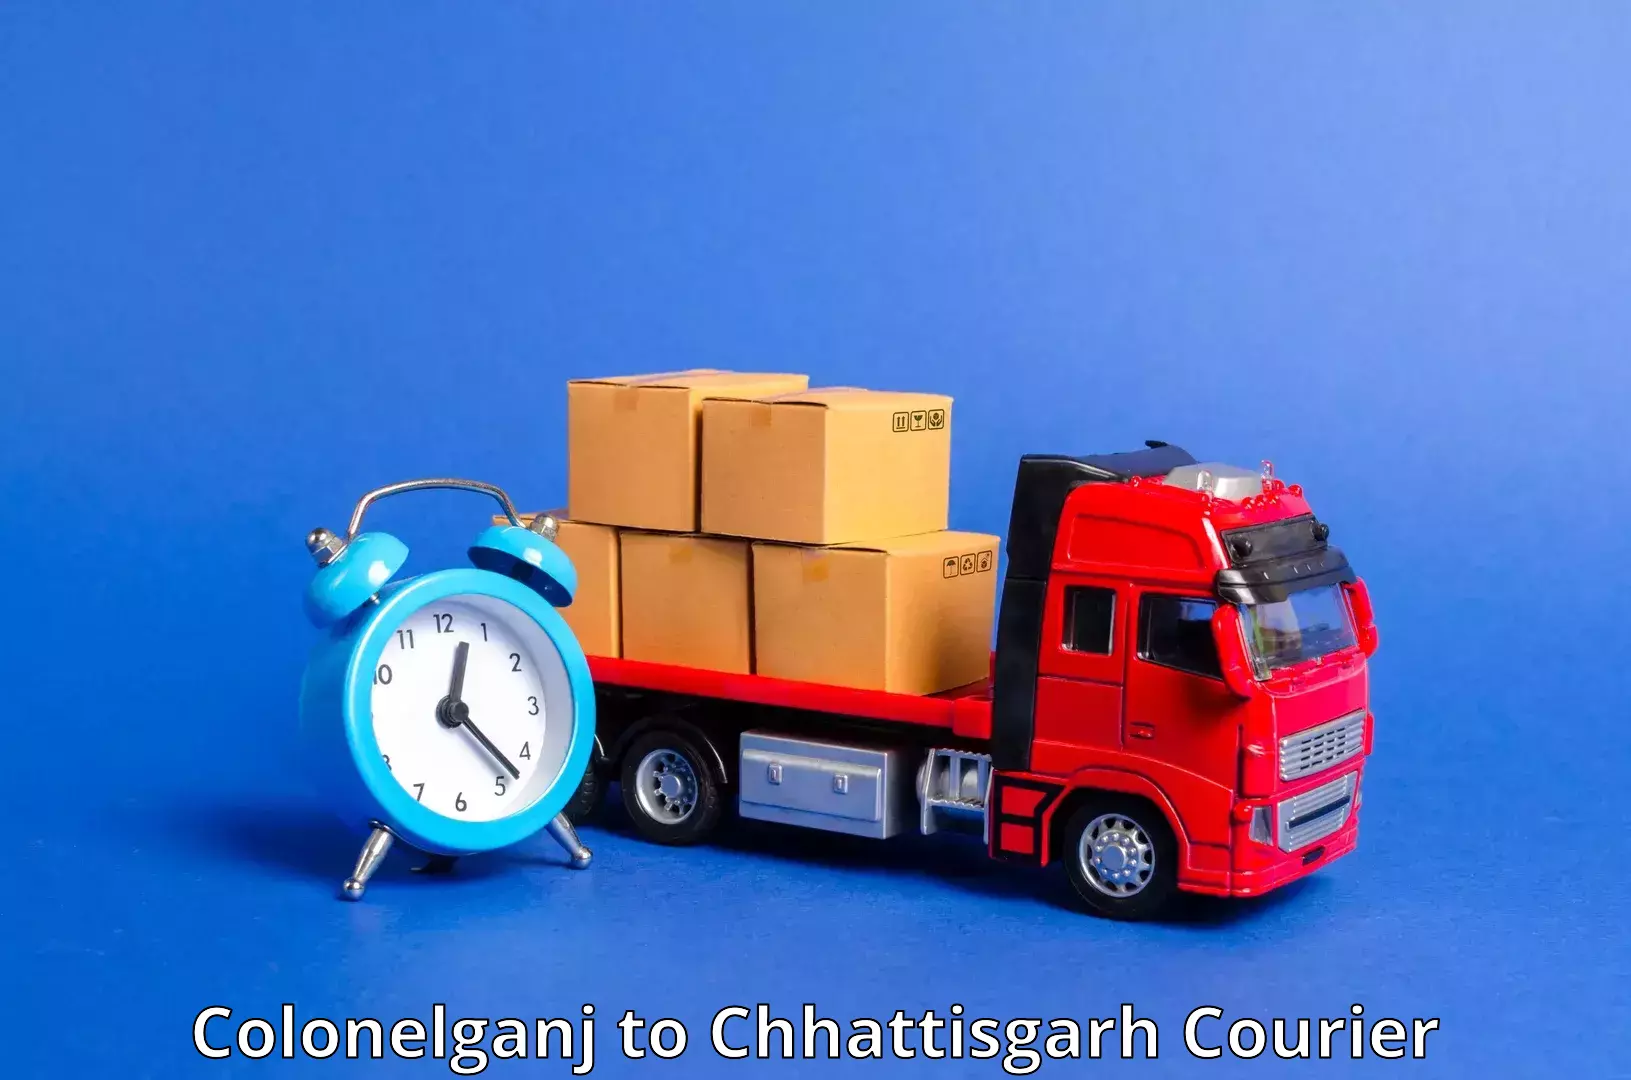 Courier service comparison Colonelganj to Chhattisgarh